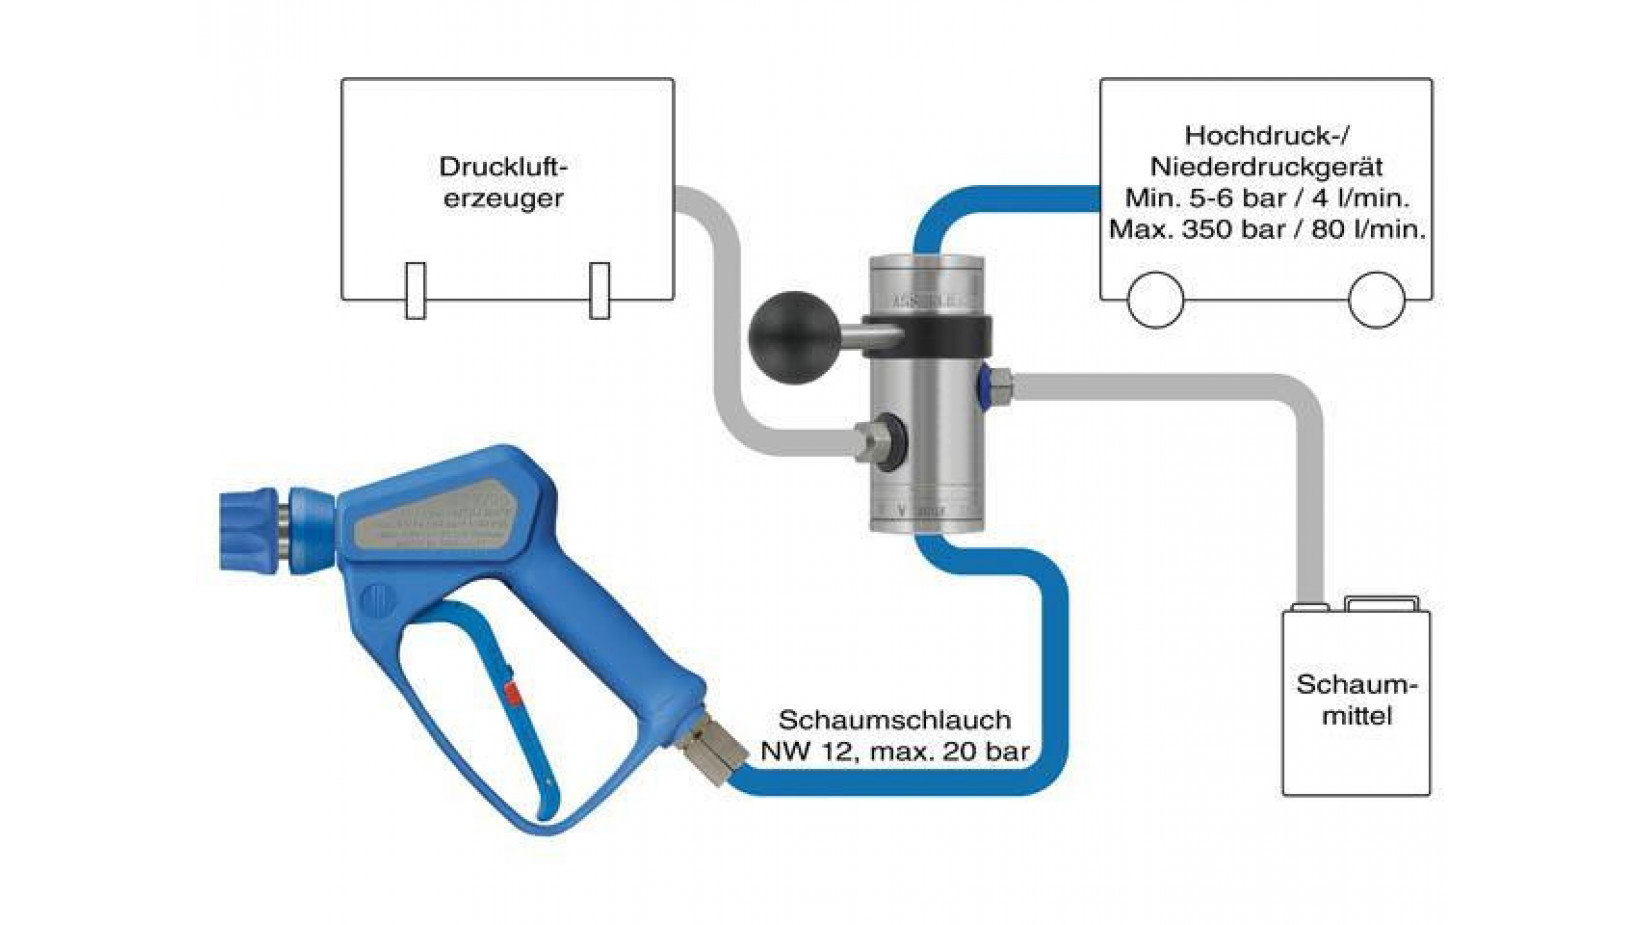 Schaum Bypass Injektor für externen Drucklufterzeuger